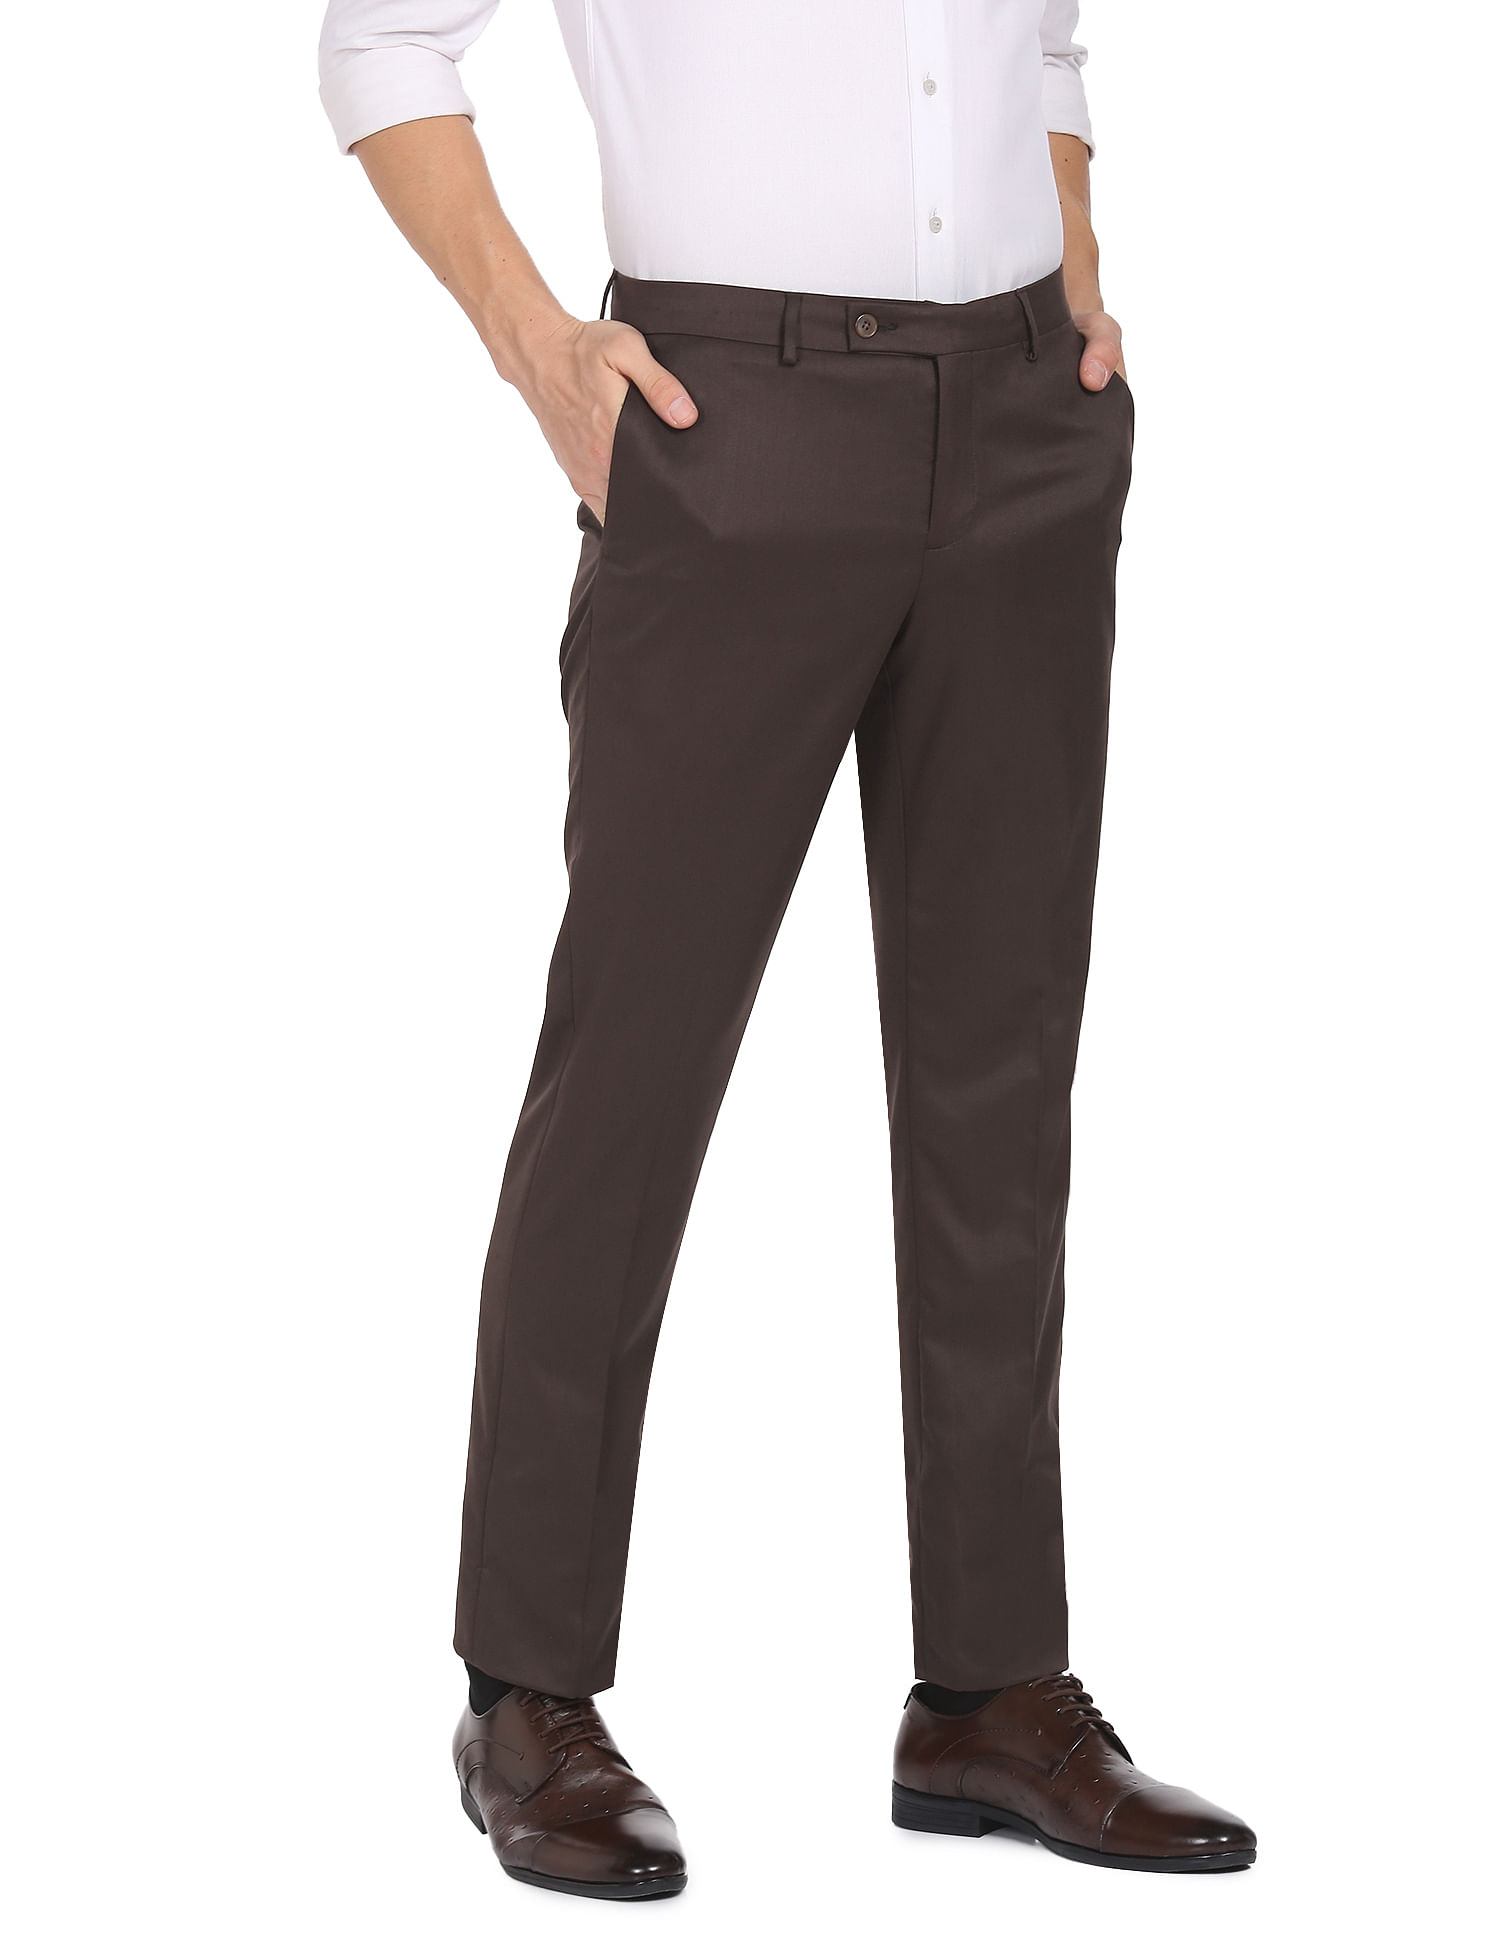 Buy Men Brown Solid Slim Fit Formal Trousers Online  683304  Peter England